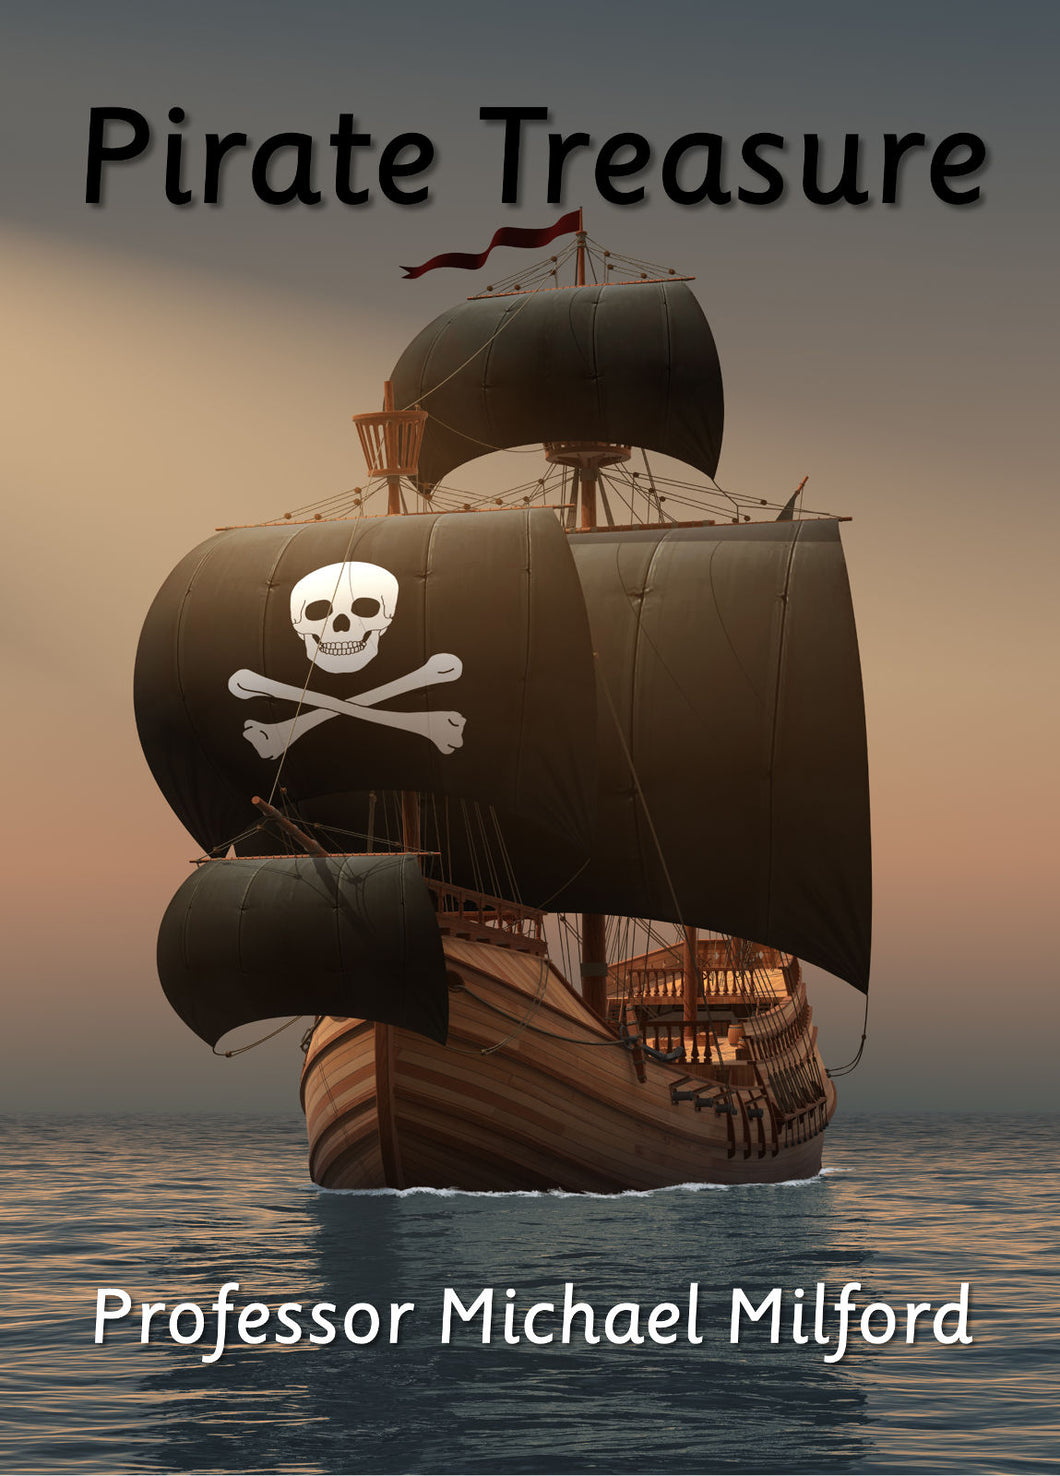 Pirate Treasure (E-book only)